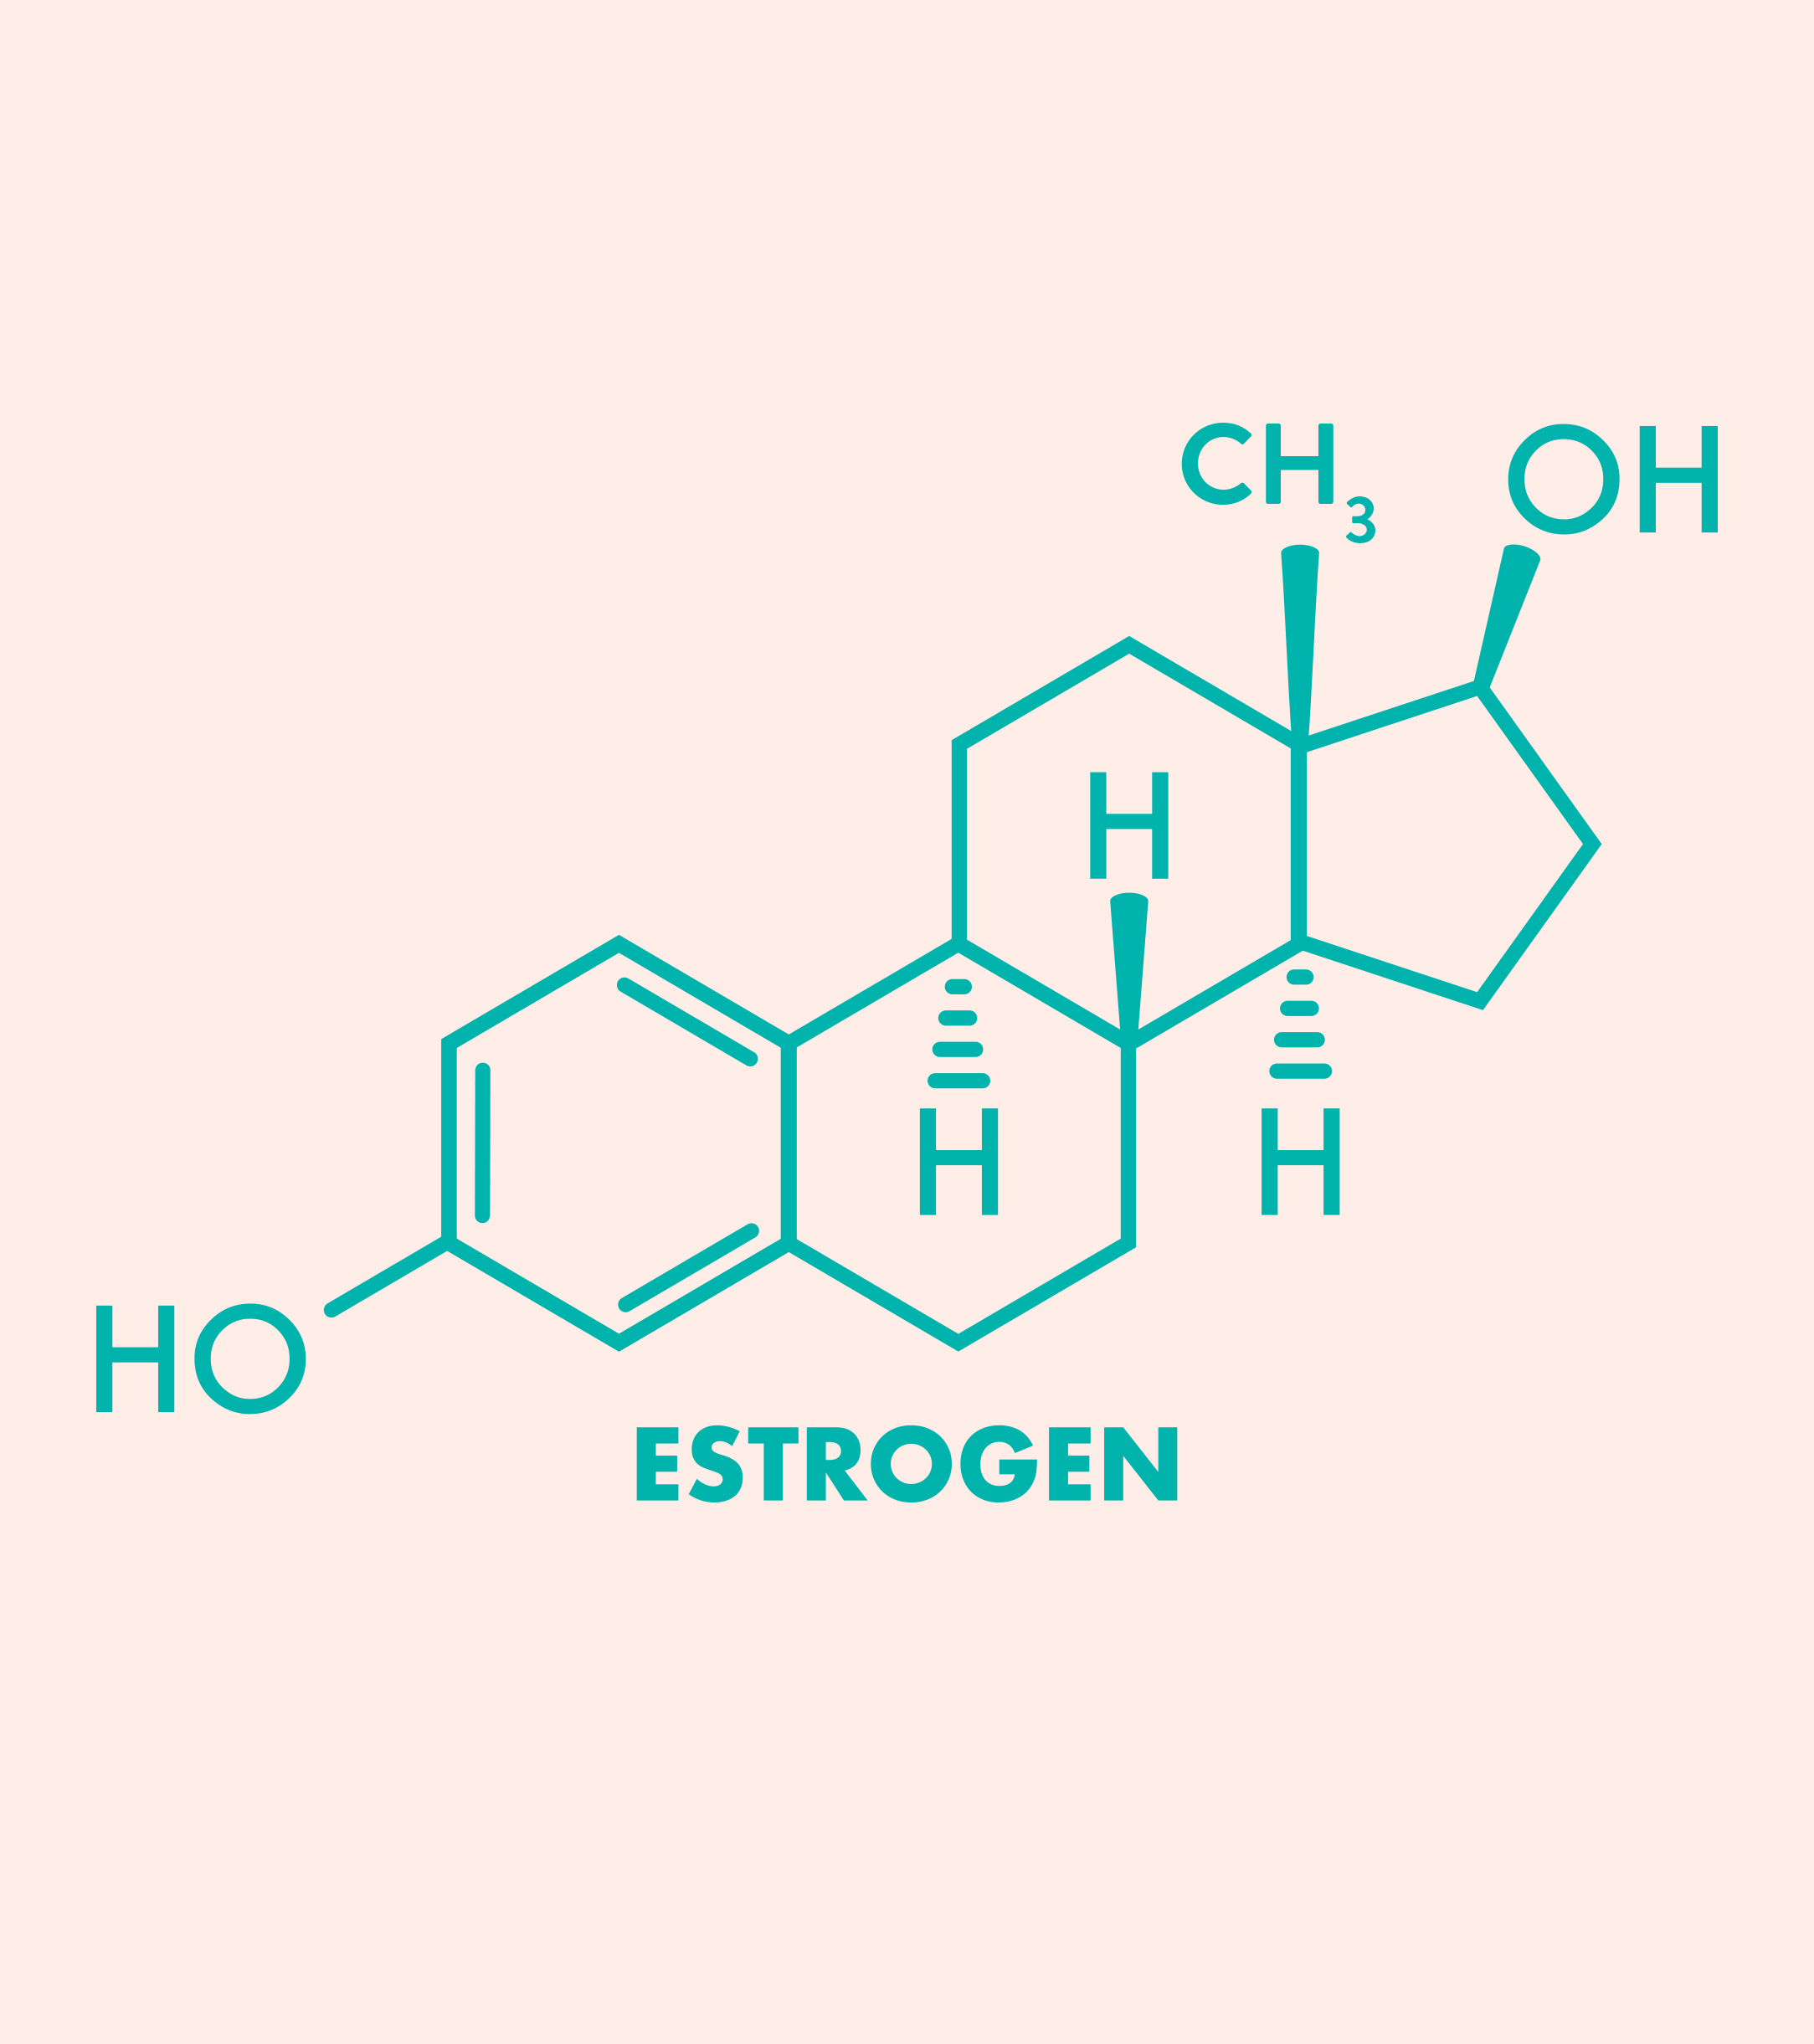 Amazing Facts about Estrogen